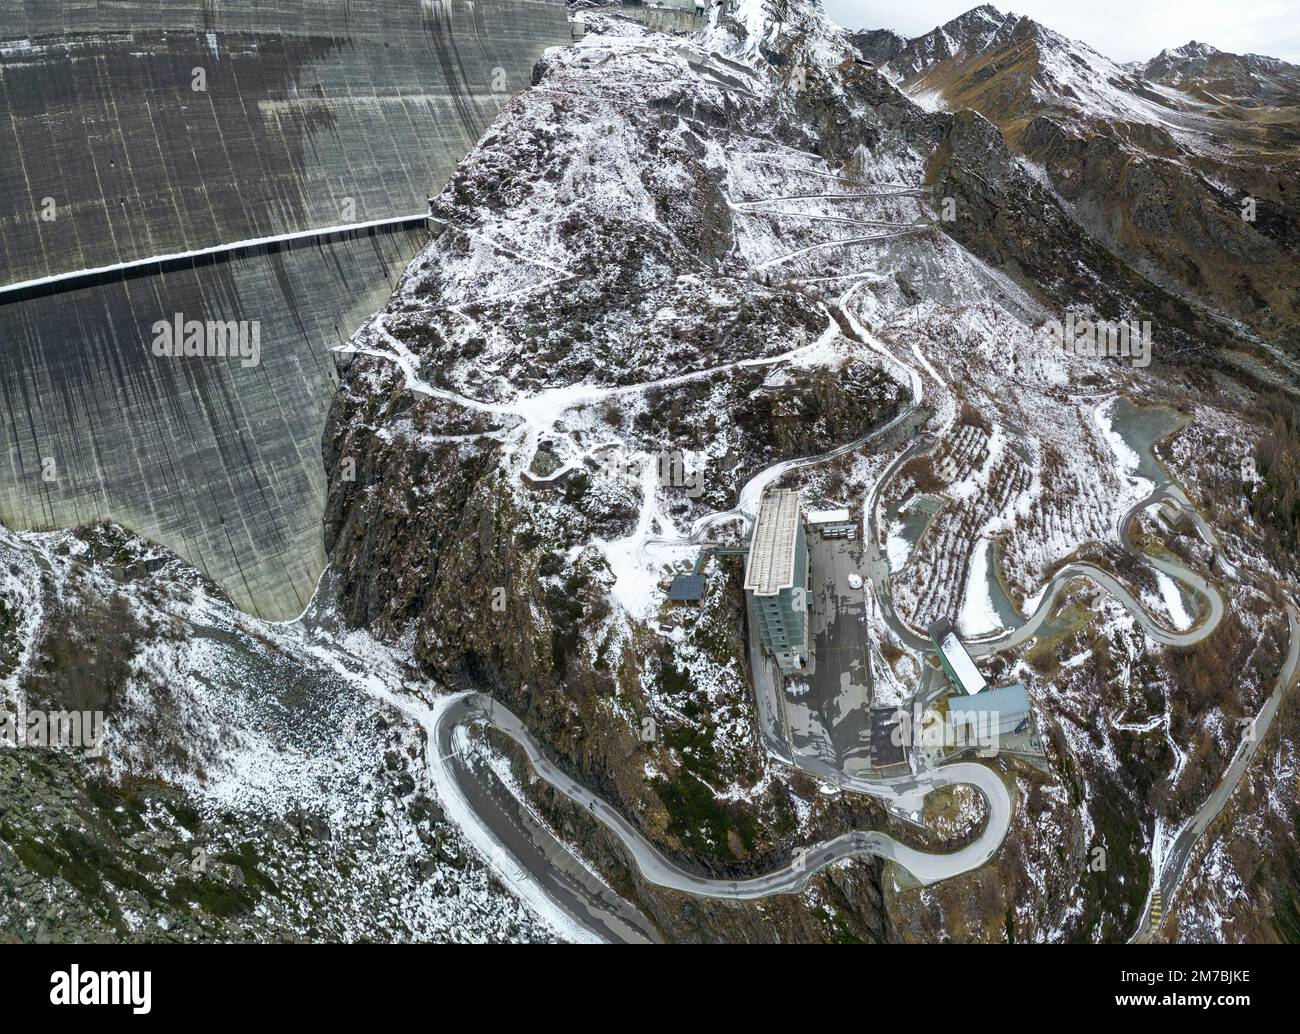 Impresionantes imágenes de drones sobre un lago alpino, una presa hidroeléctrica y un vasto embalse alpino bordeado por montañas escarpadas con un sendero junto al agua después de la primera nieve Foto de stock